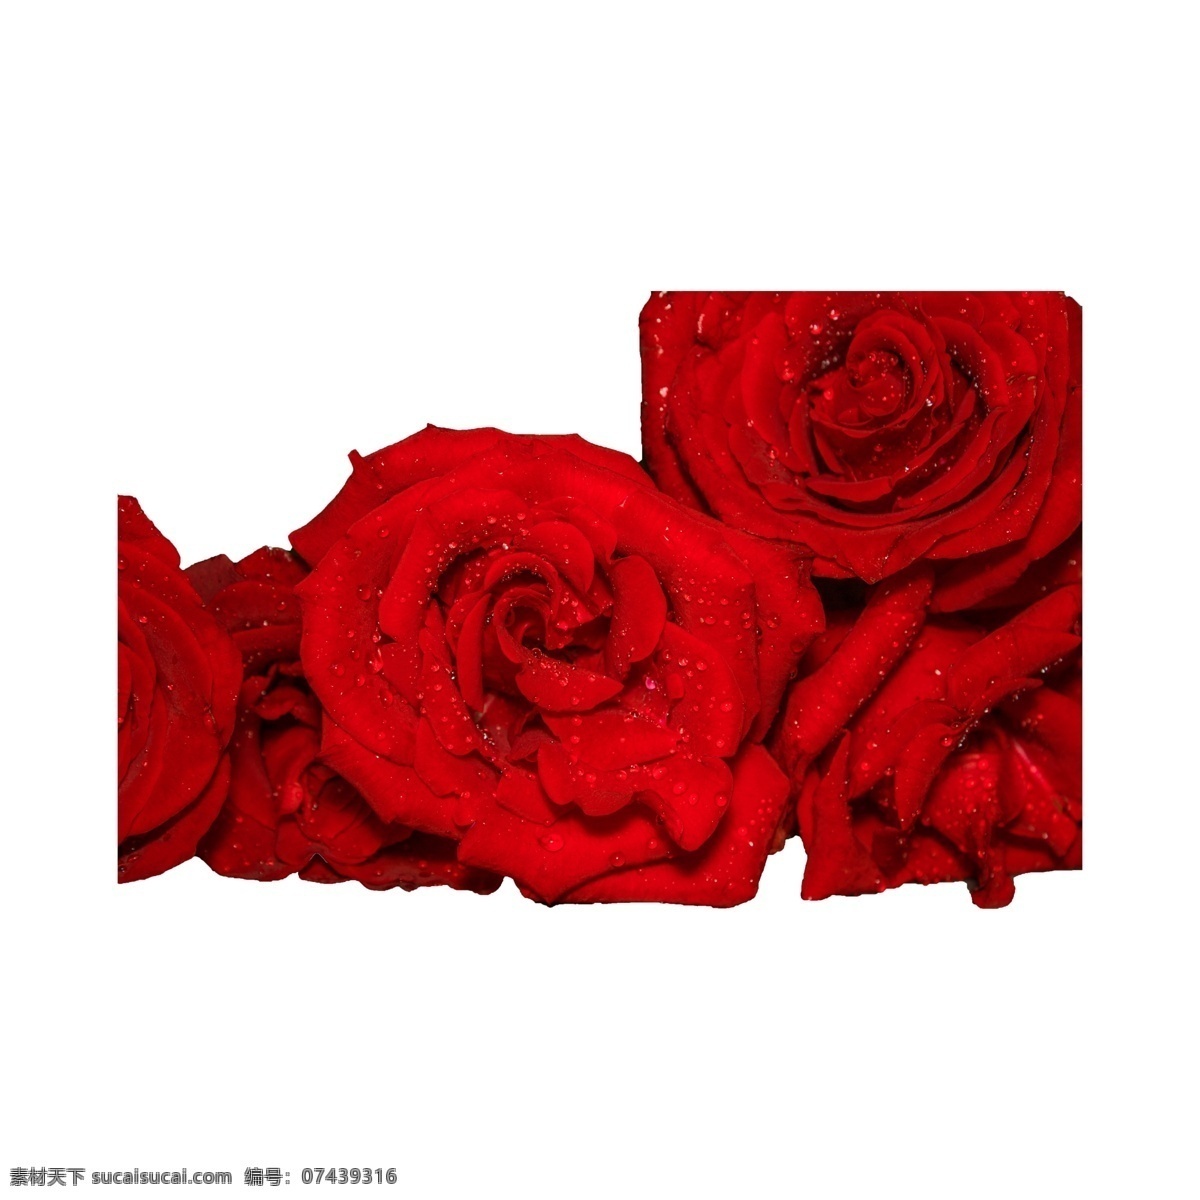 情人节 红玫瑰 实物 拍摄 免 抠 鲜花 花卉 植物 爱情 红玫瑰免抠 玫瑰 红色